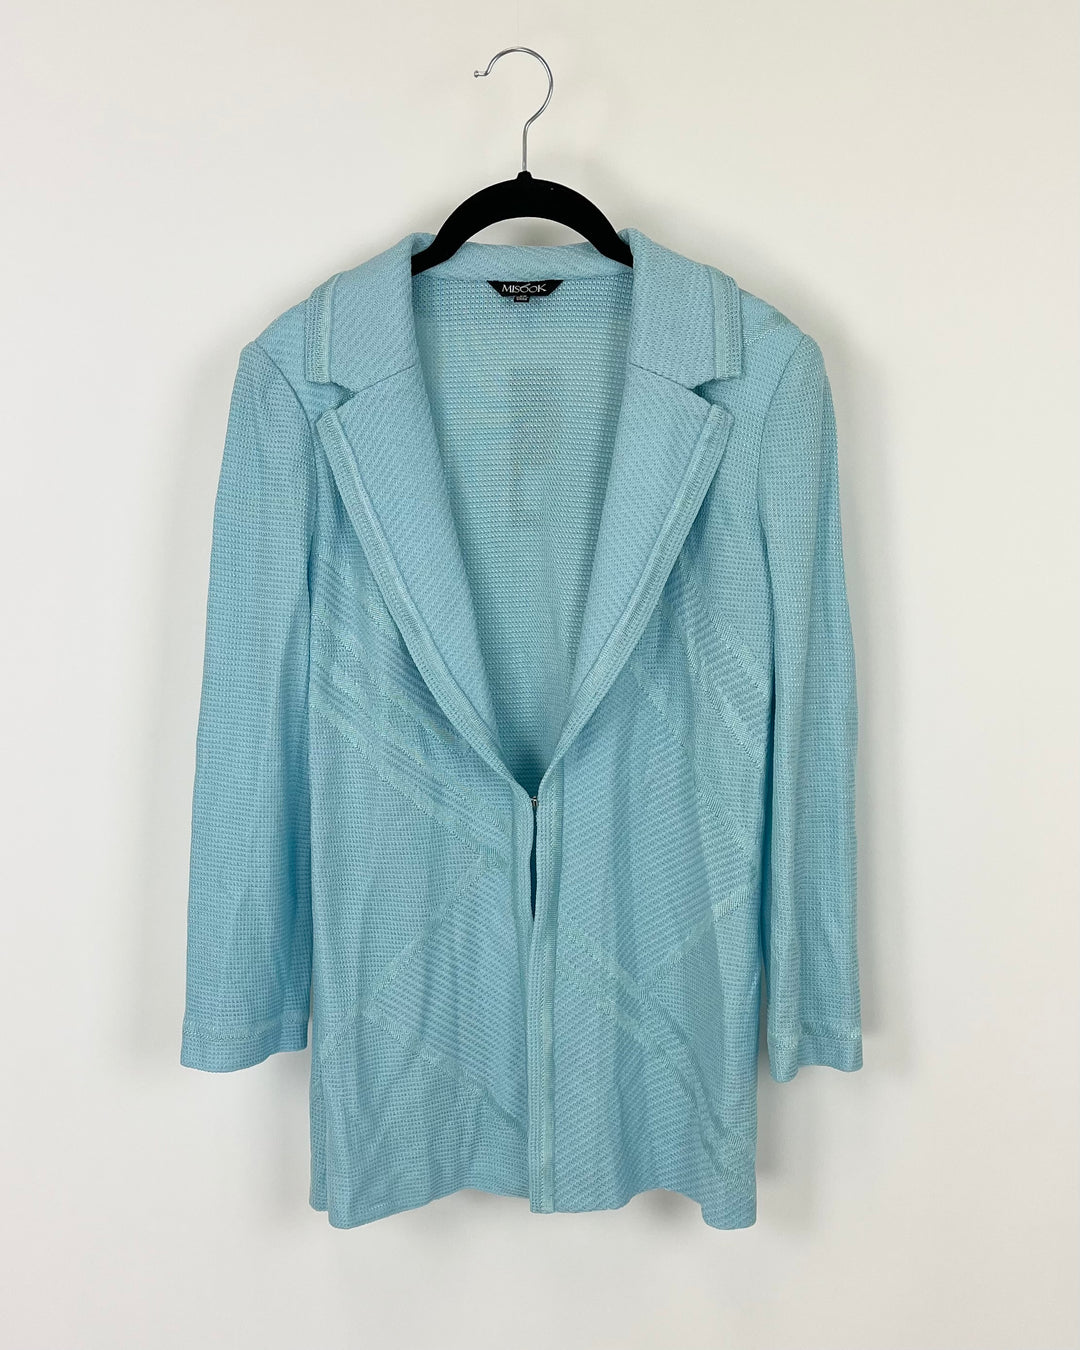 Light Blue Knit Cardigan - Size 2-4